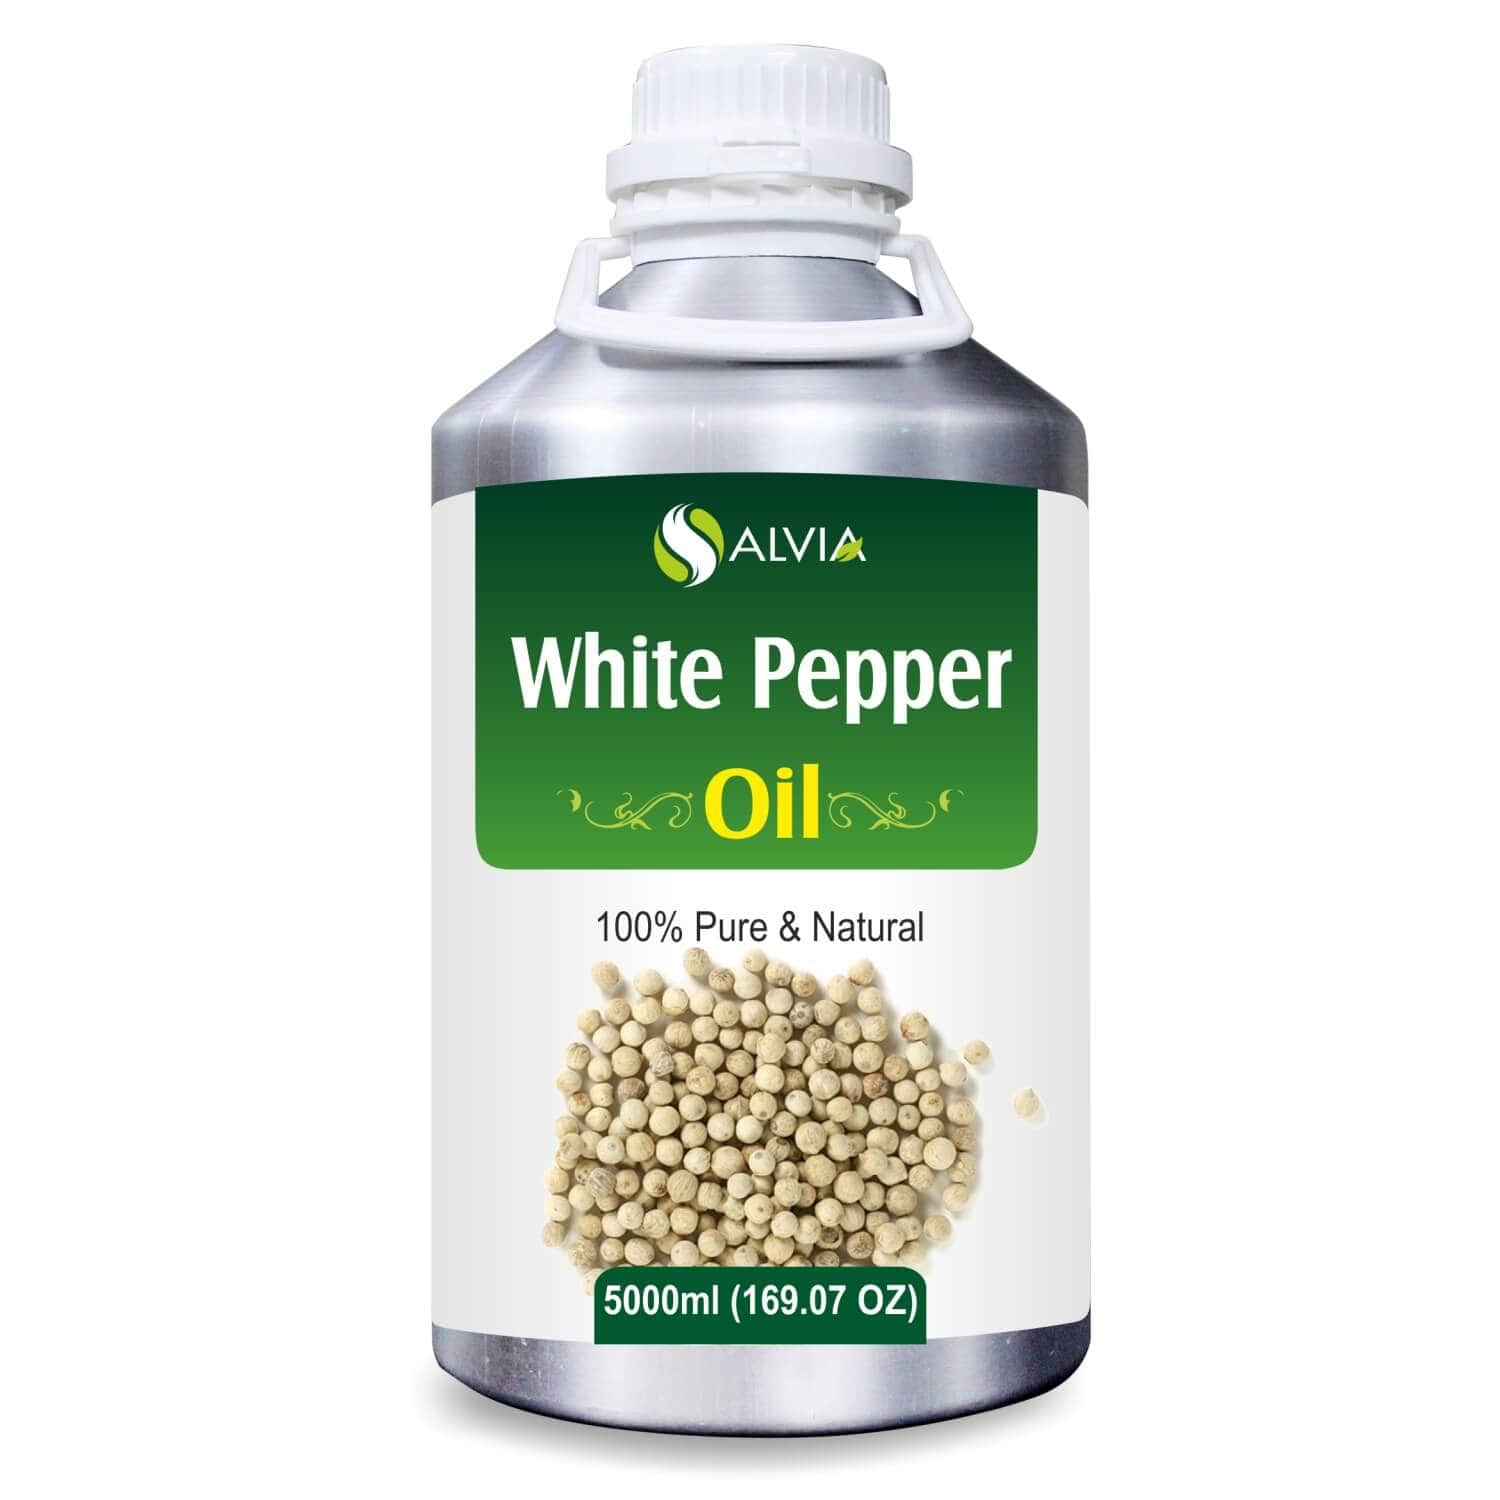 Salvia Natural Essential Oils 5000ml White Pepper Oil (Piper Nigrum) 100% Pure Essential Oil Relieves Pain, Heals Headaches, Solves Vitiligo, Rich Antioxidants, Aromatherapy, Maintains Hair Health